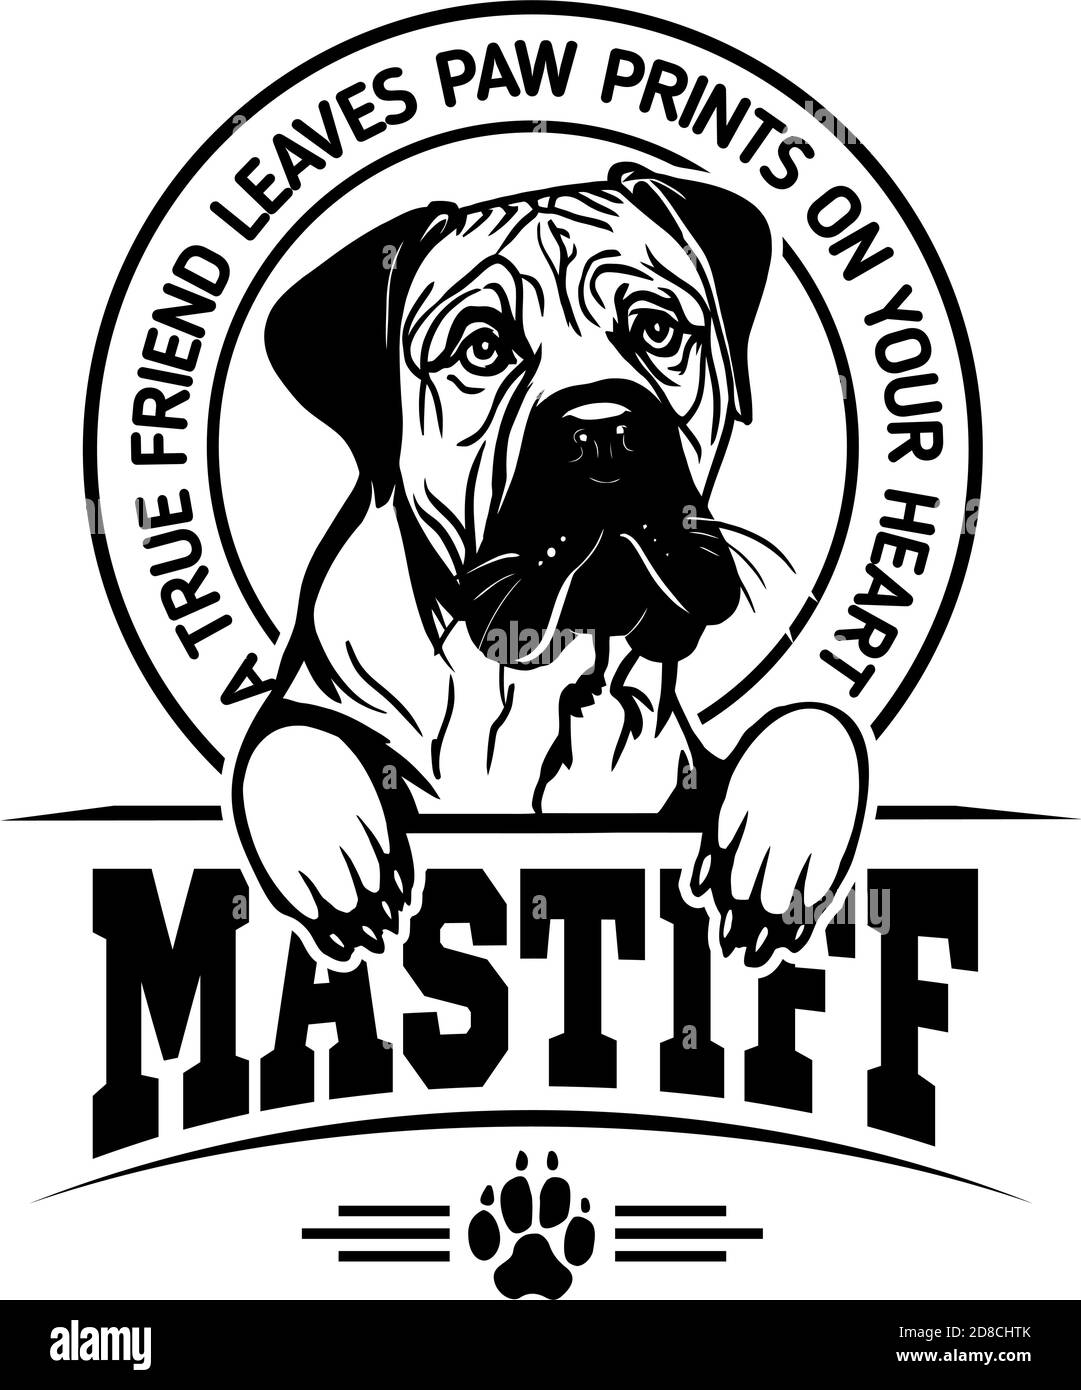 Mastiff Dog - cane Felice faccia Paw cucciolo cucciolo cucciolo Clip Art K-9 Cop Police Logo SVG PNG Clipart Vector Taglio Cricut Illustrazione Vettoriale